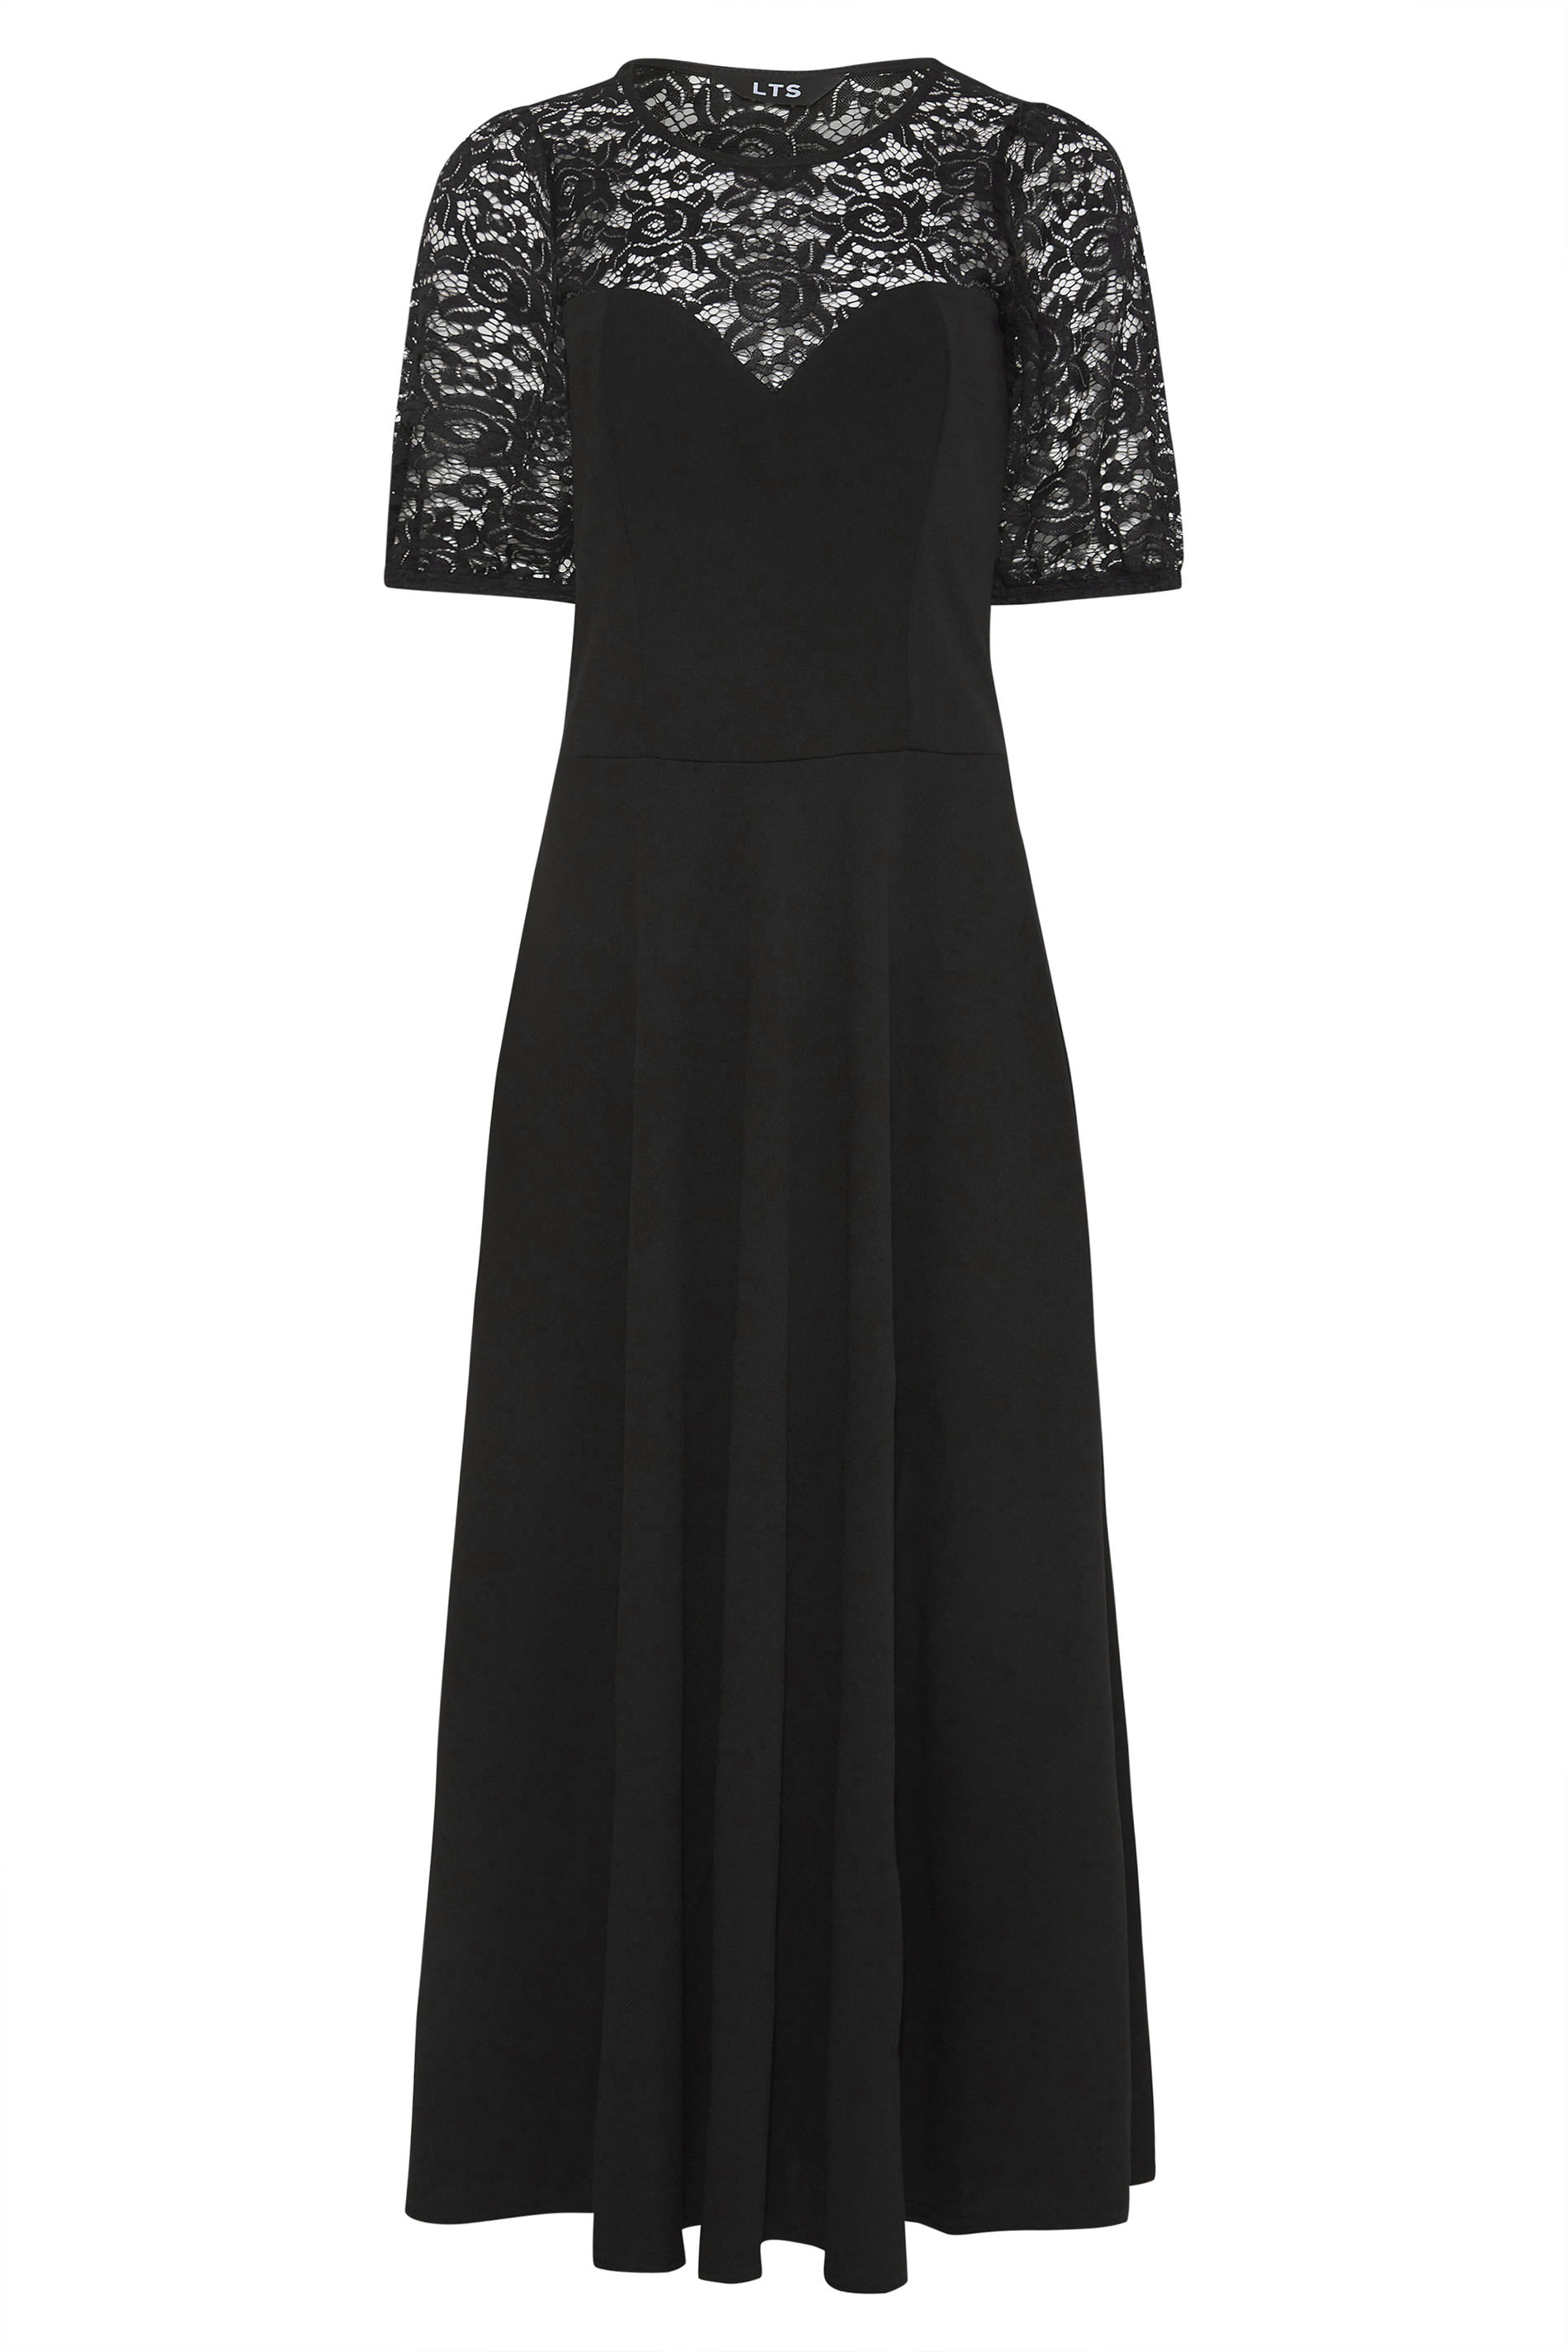 Tall Women's LTS Black Lace Midi Dress | Long Tall Sally 2